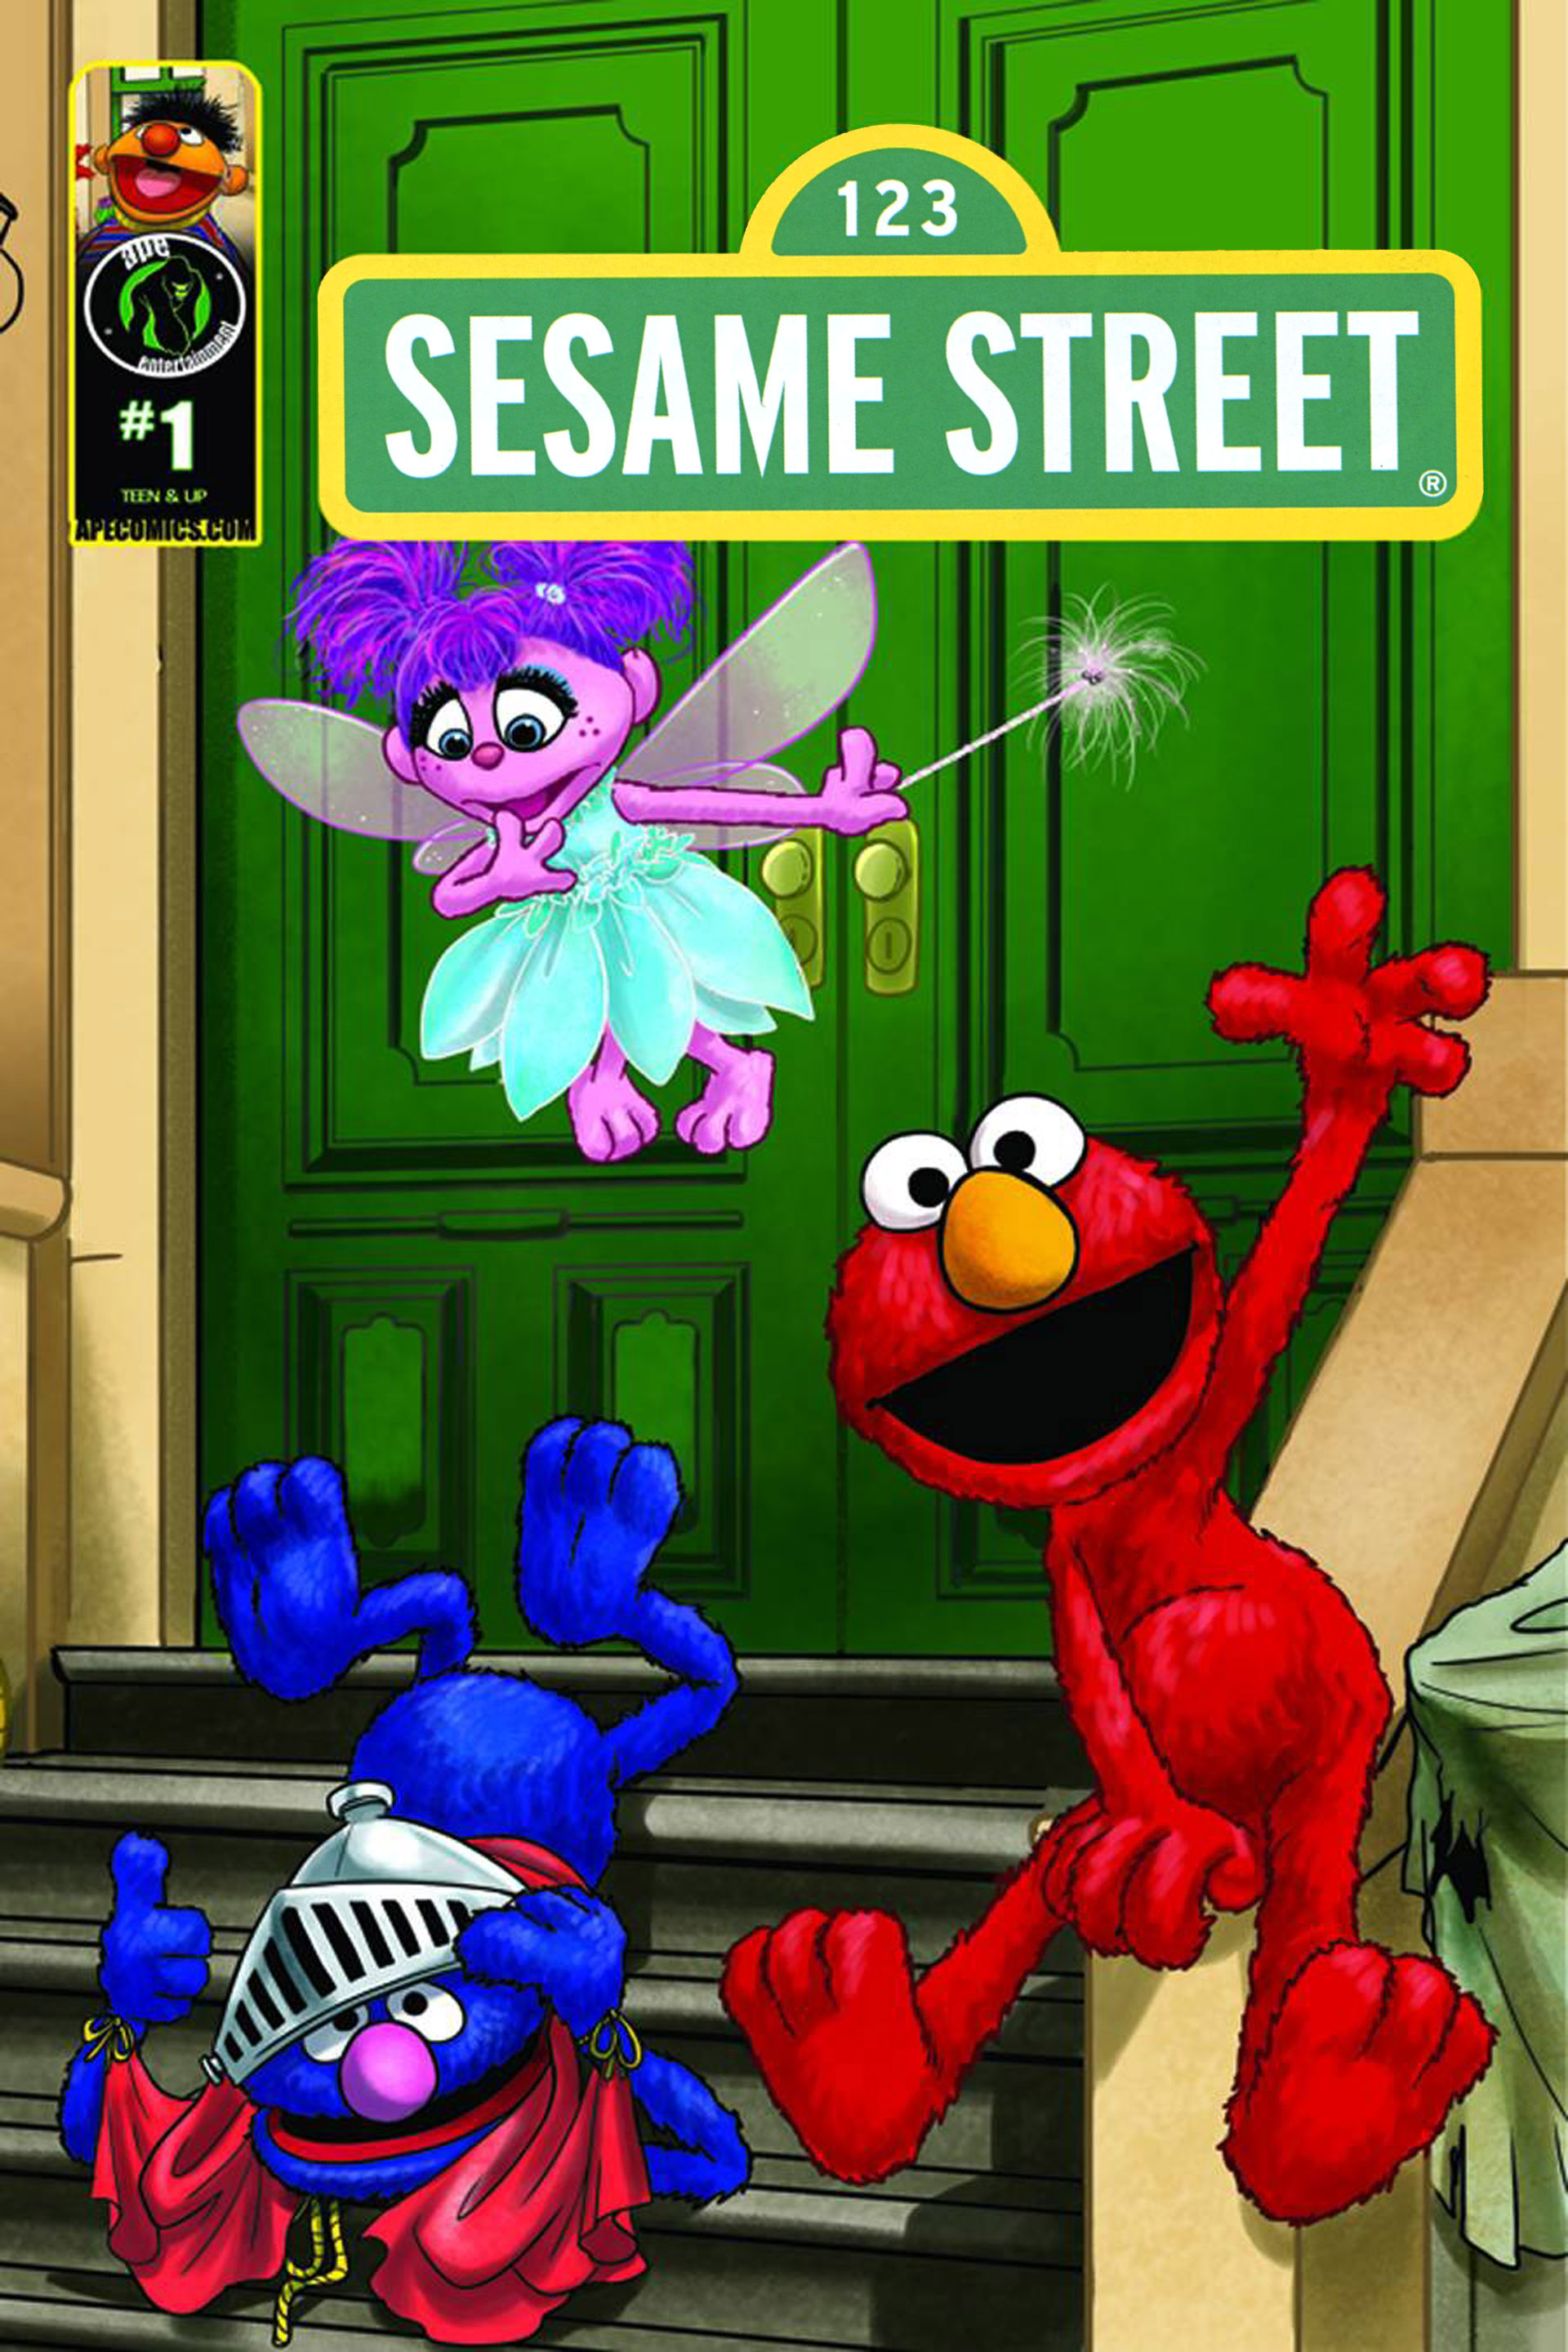 Sesame Street Sex Porn - Sesame Street Full | Read Sesame Street Full comic online in high quality.  Read Full Comic online for free - Read comics online in high quality .|  READ COMIC ONLINE